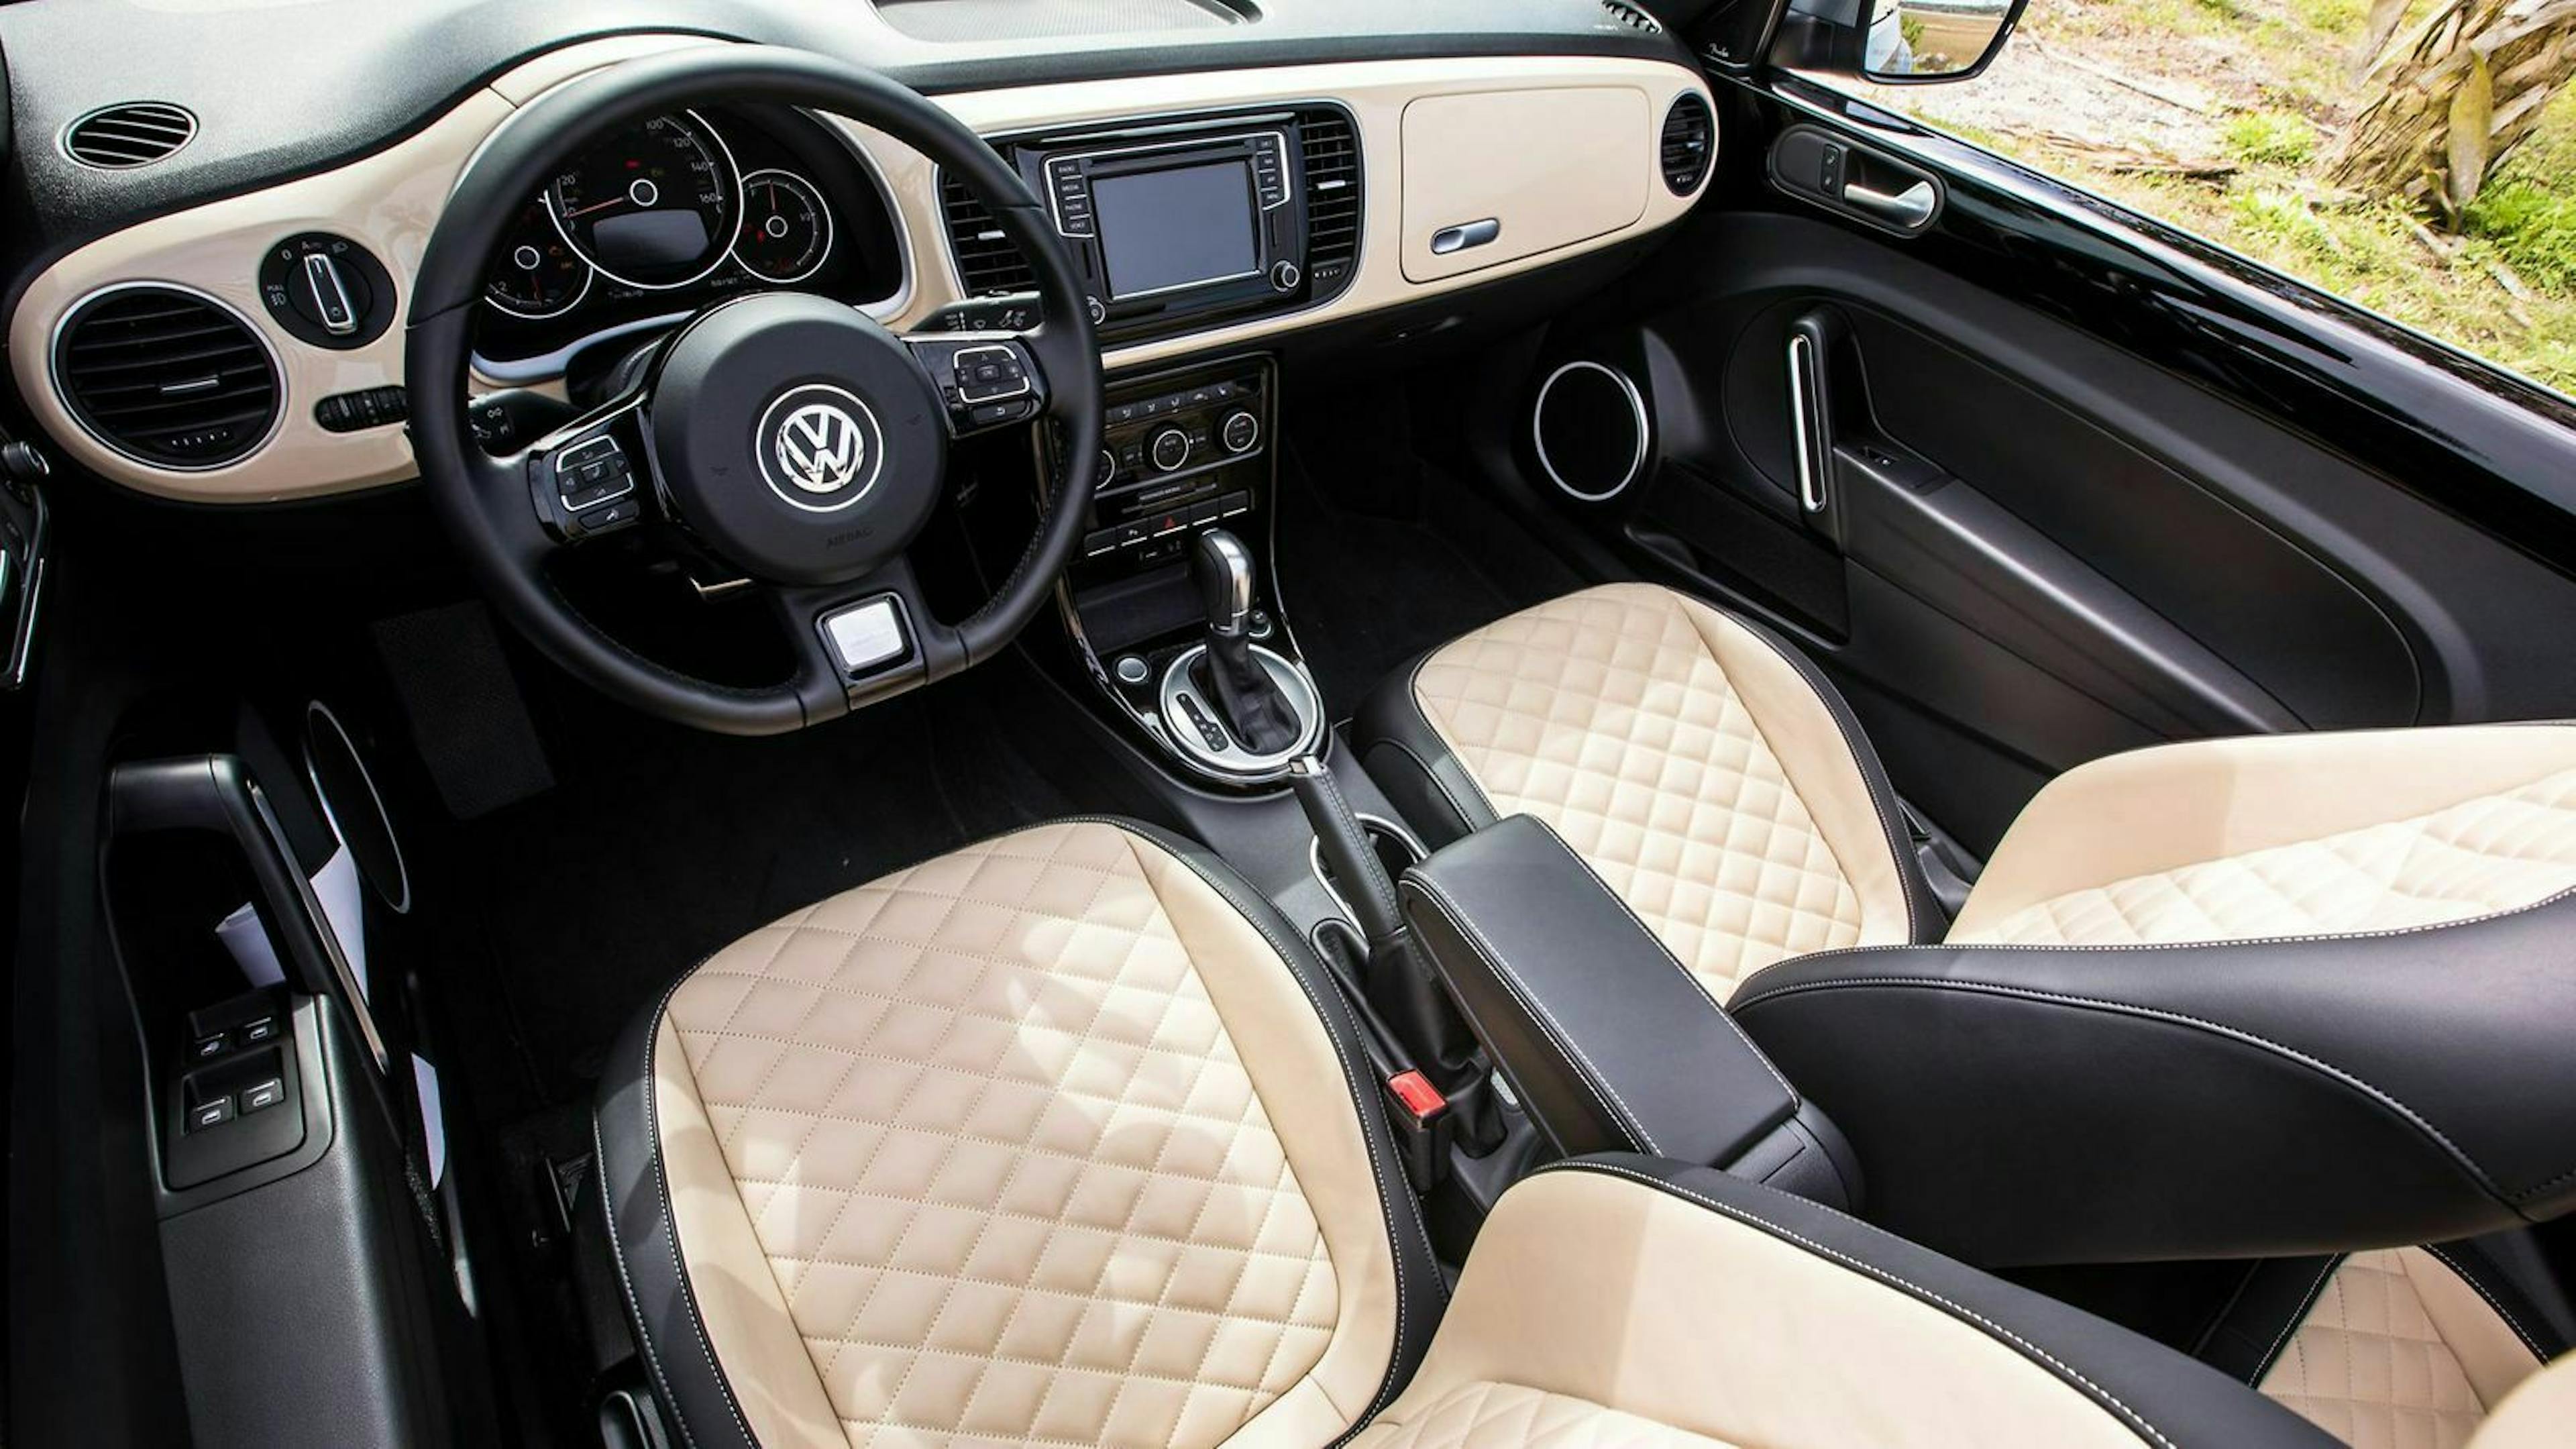 Zu sehen ist das Cokpit des VW Beetle Cabrio Final Edition